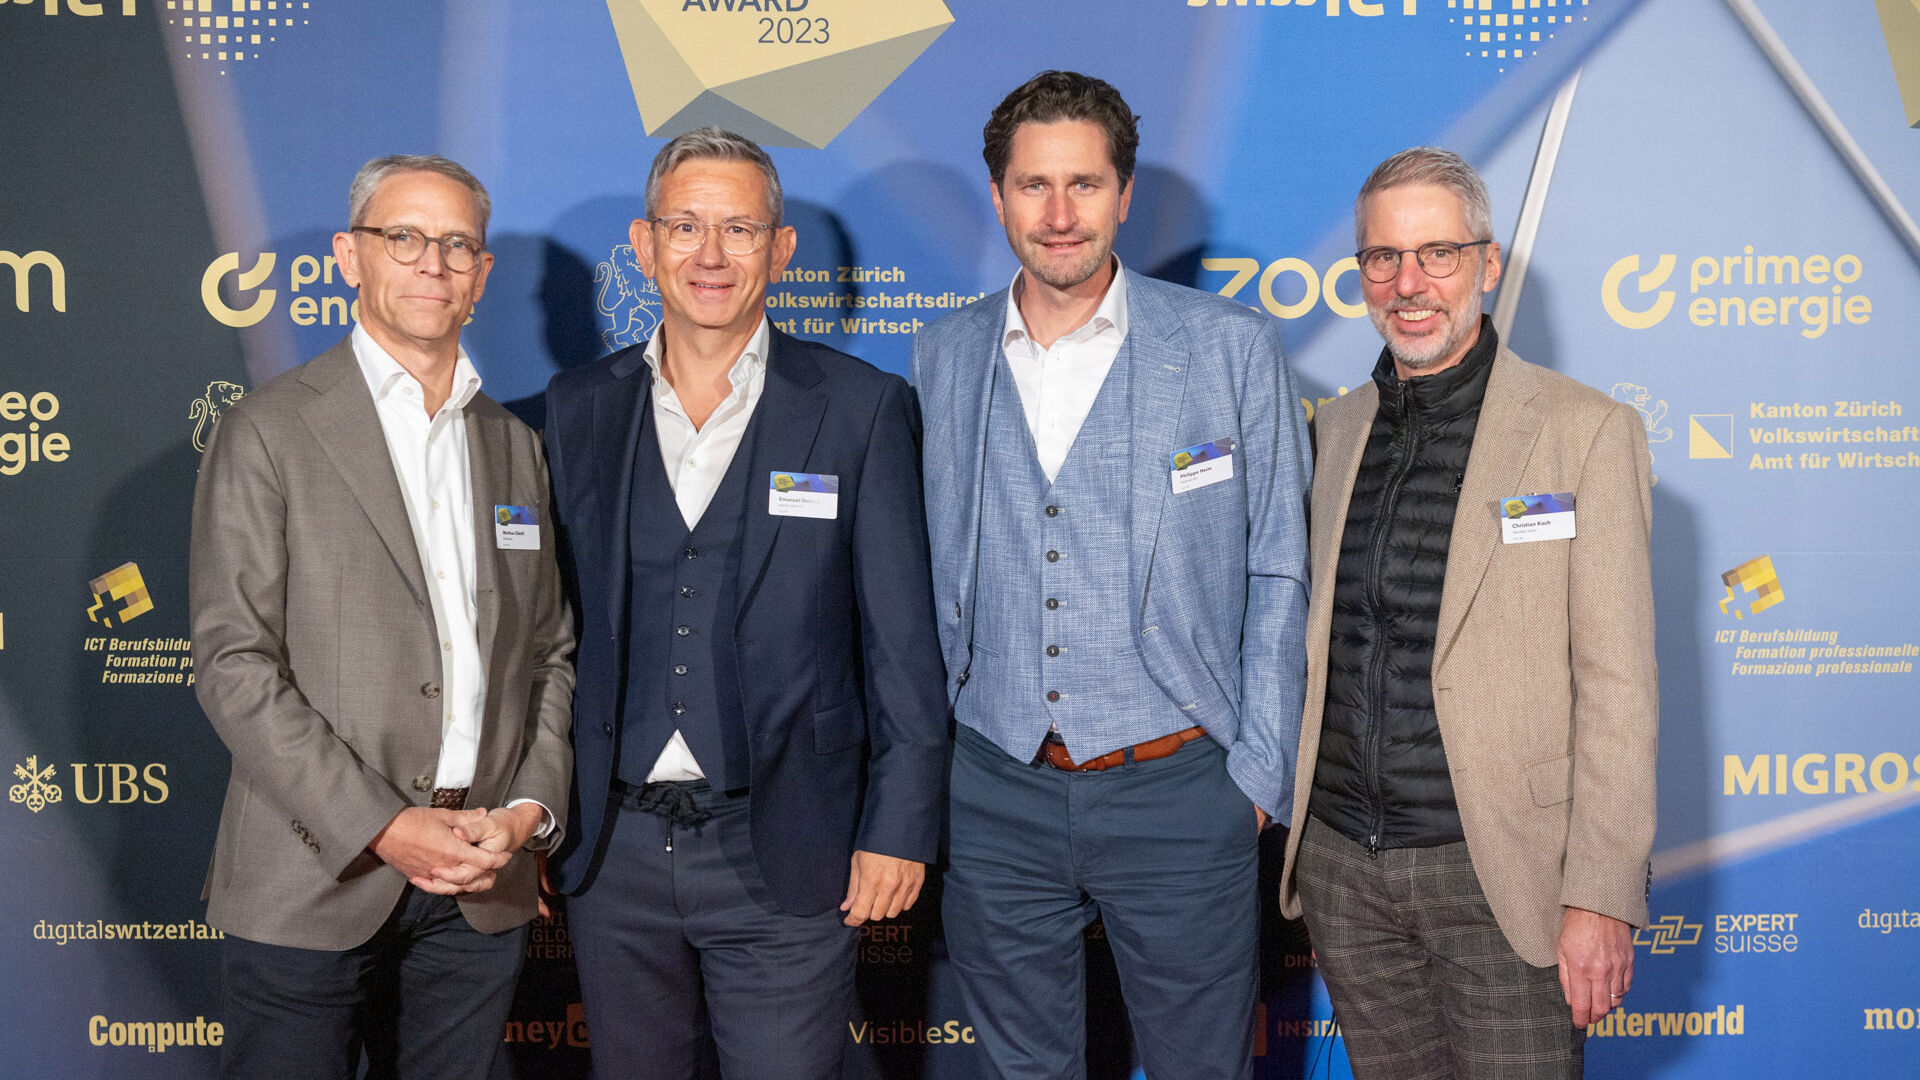 Βραβείο Ψηφιακής Οικονομίας: η συλλογή φωτογραφιών της τελετής απονομής στο Hallenstadion στη Ζυρίχη στην Ελβετία στις 16 Νοεμβρίου 2023